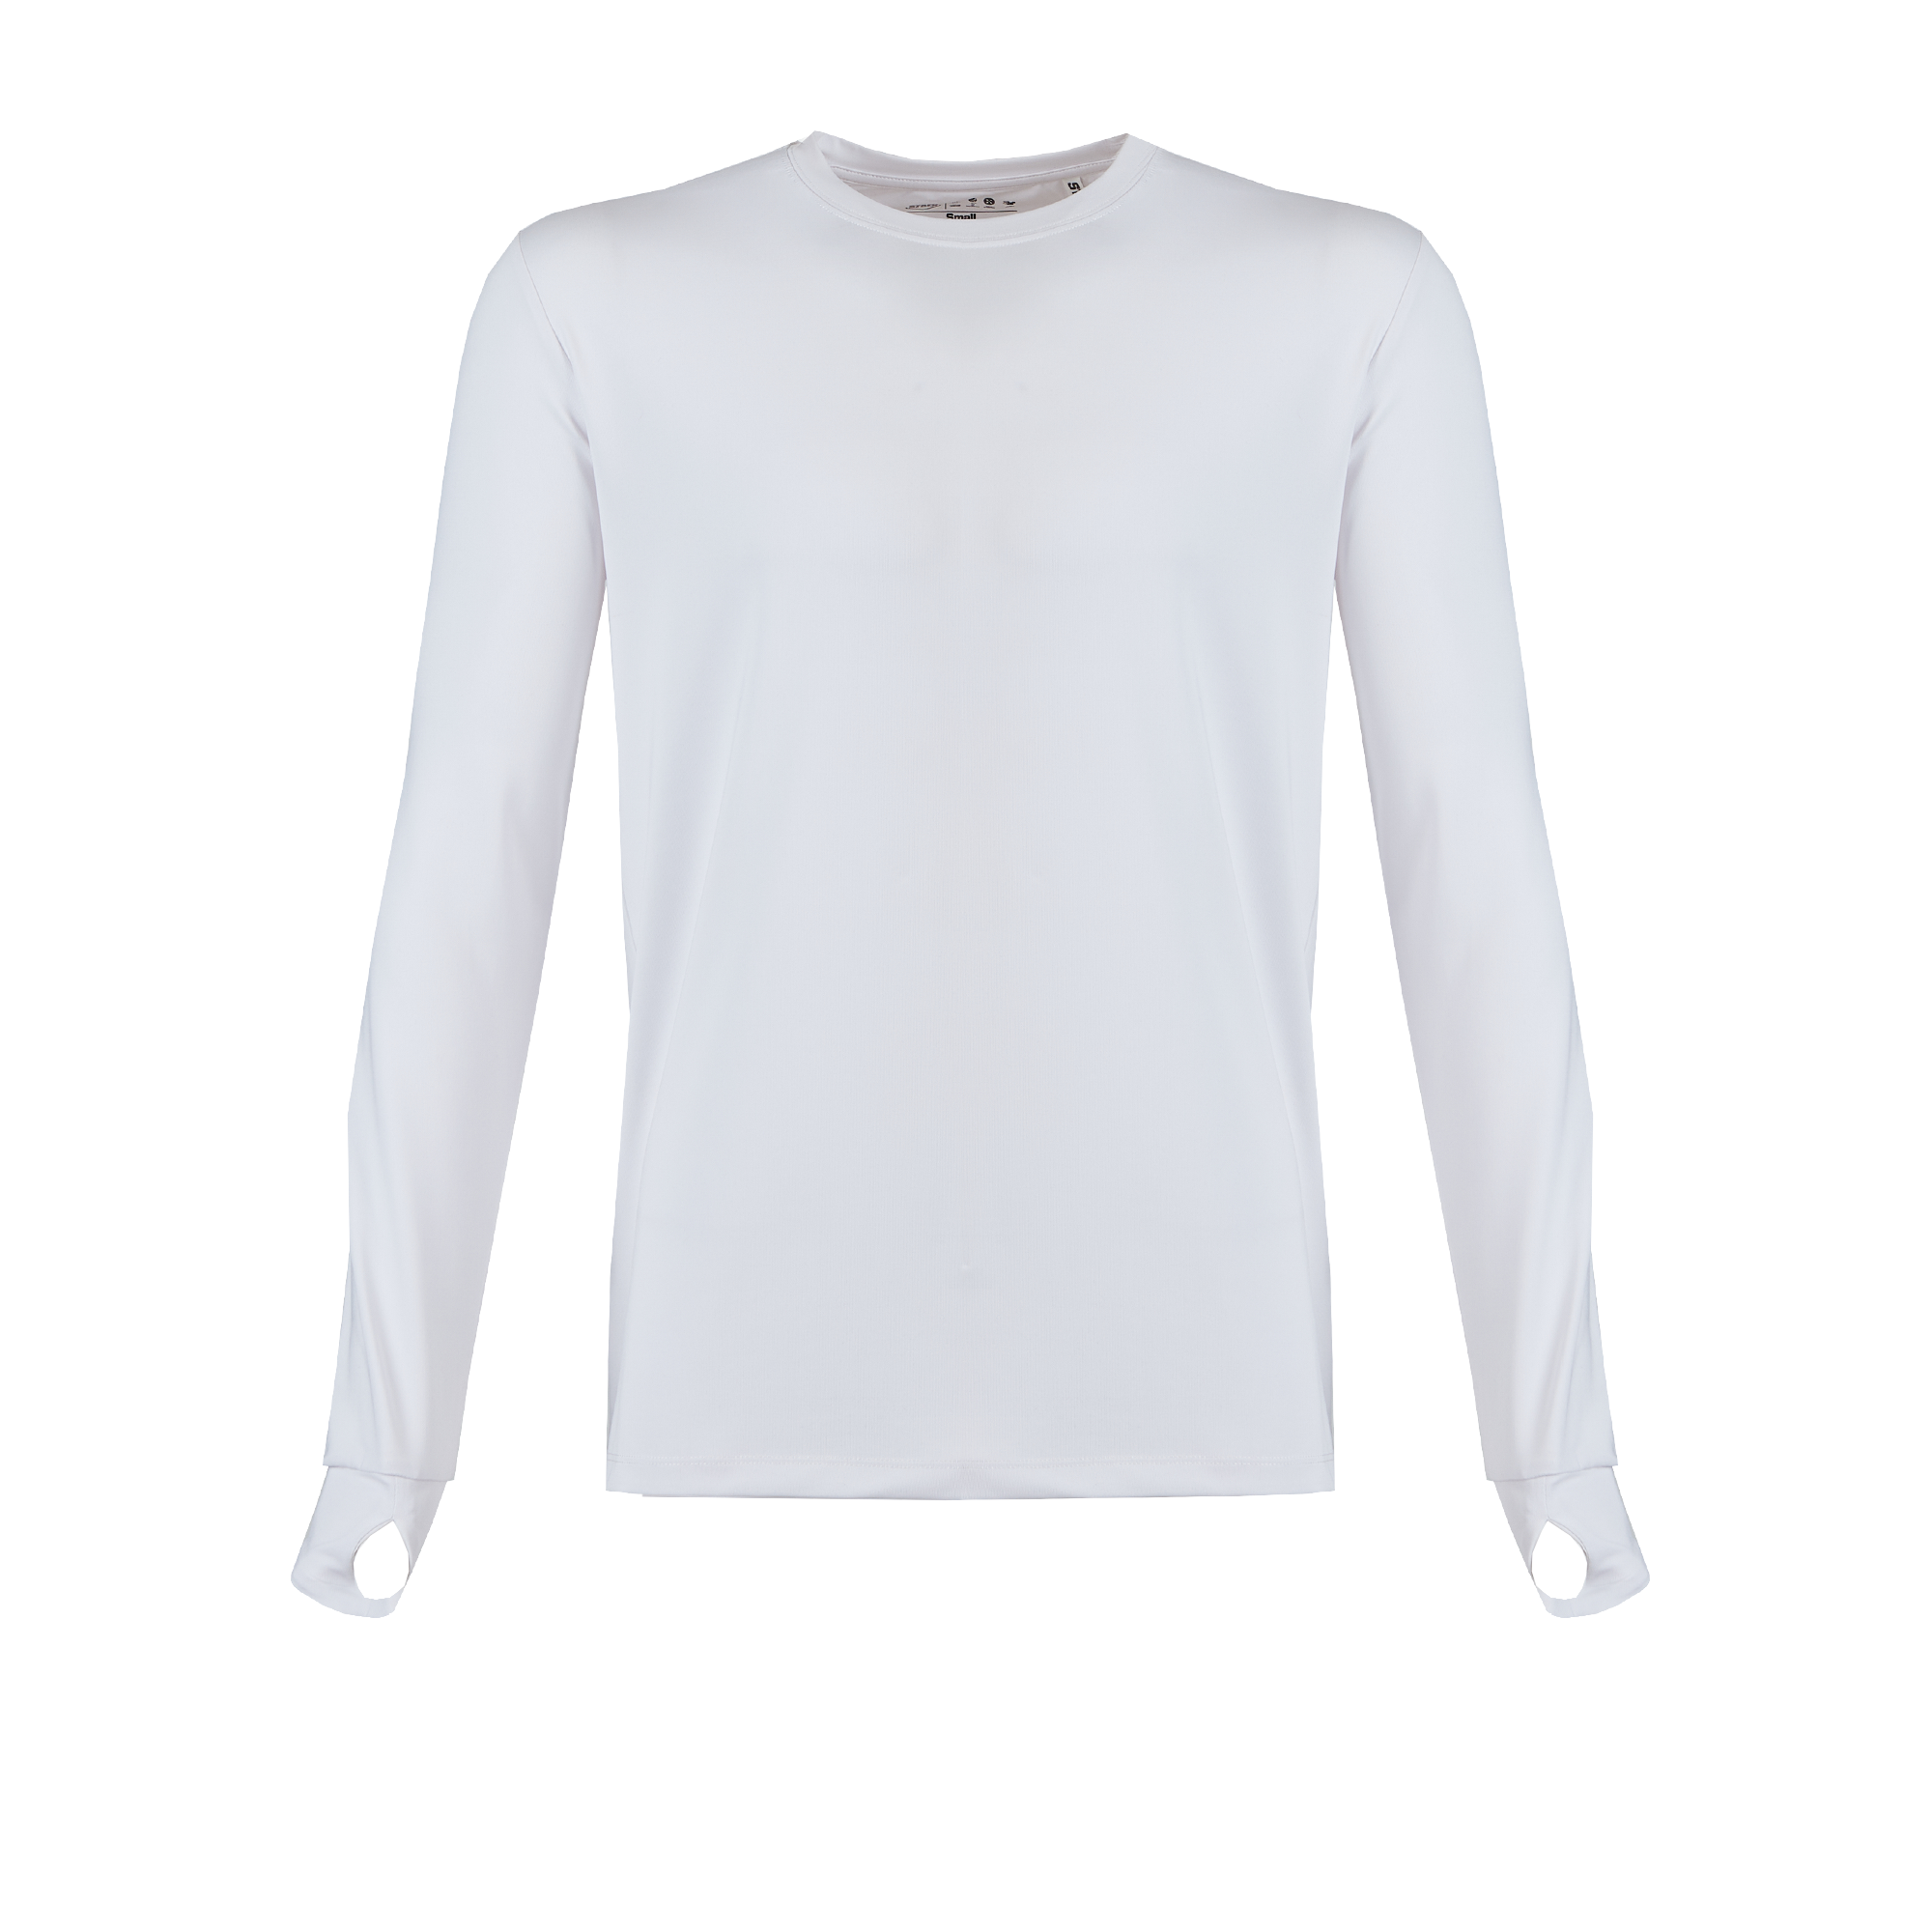 Apex v2 Long Sleeve Fishing Shirt - White